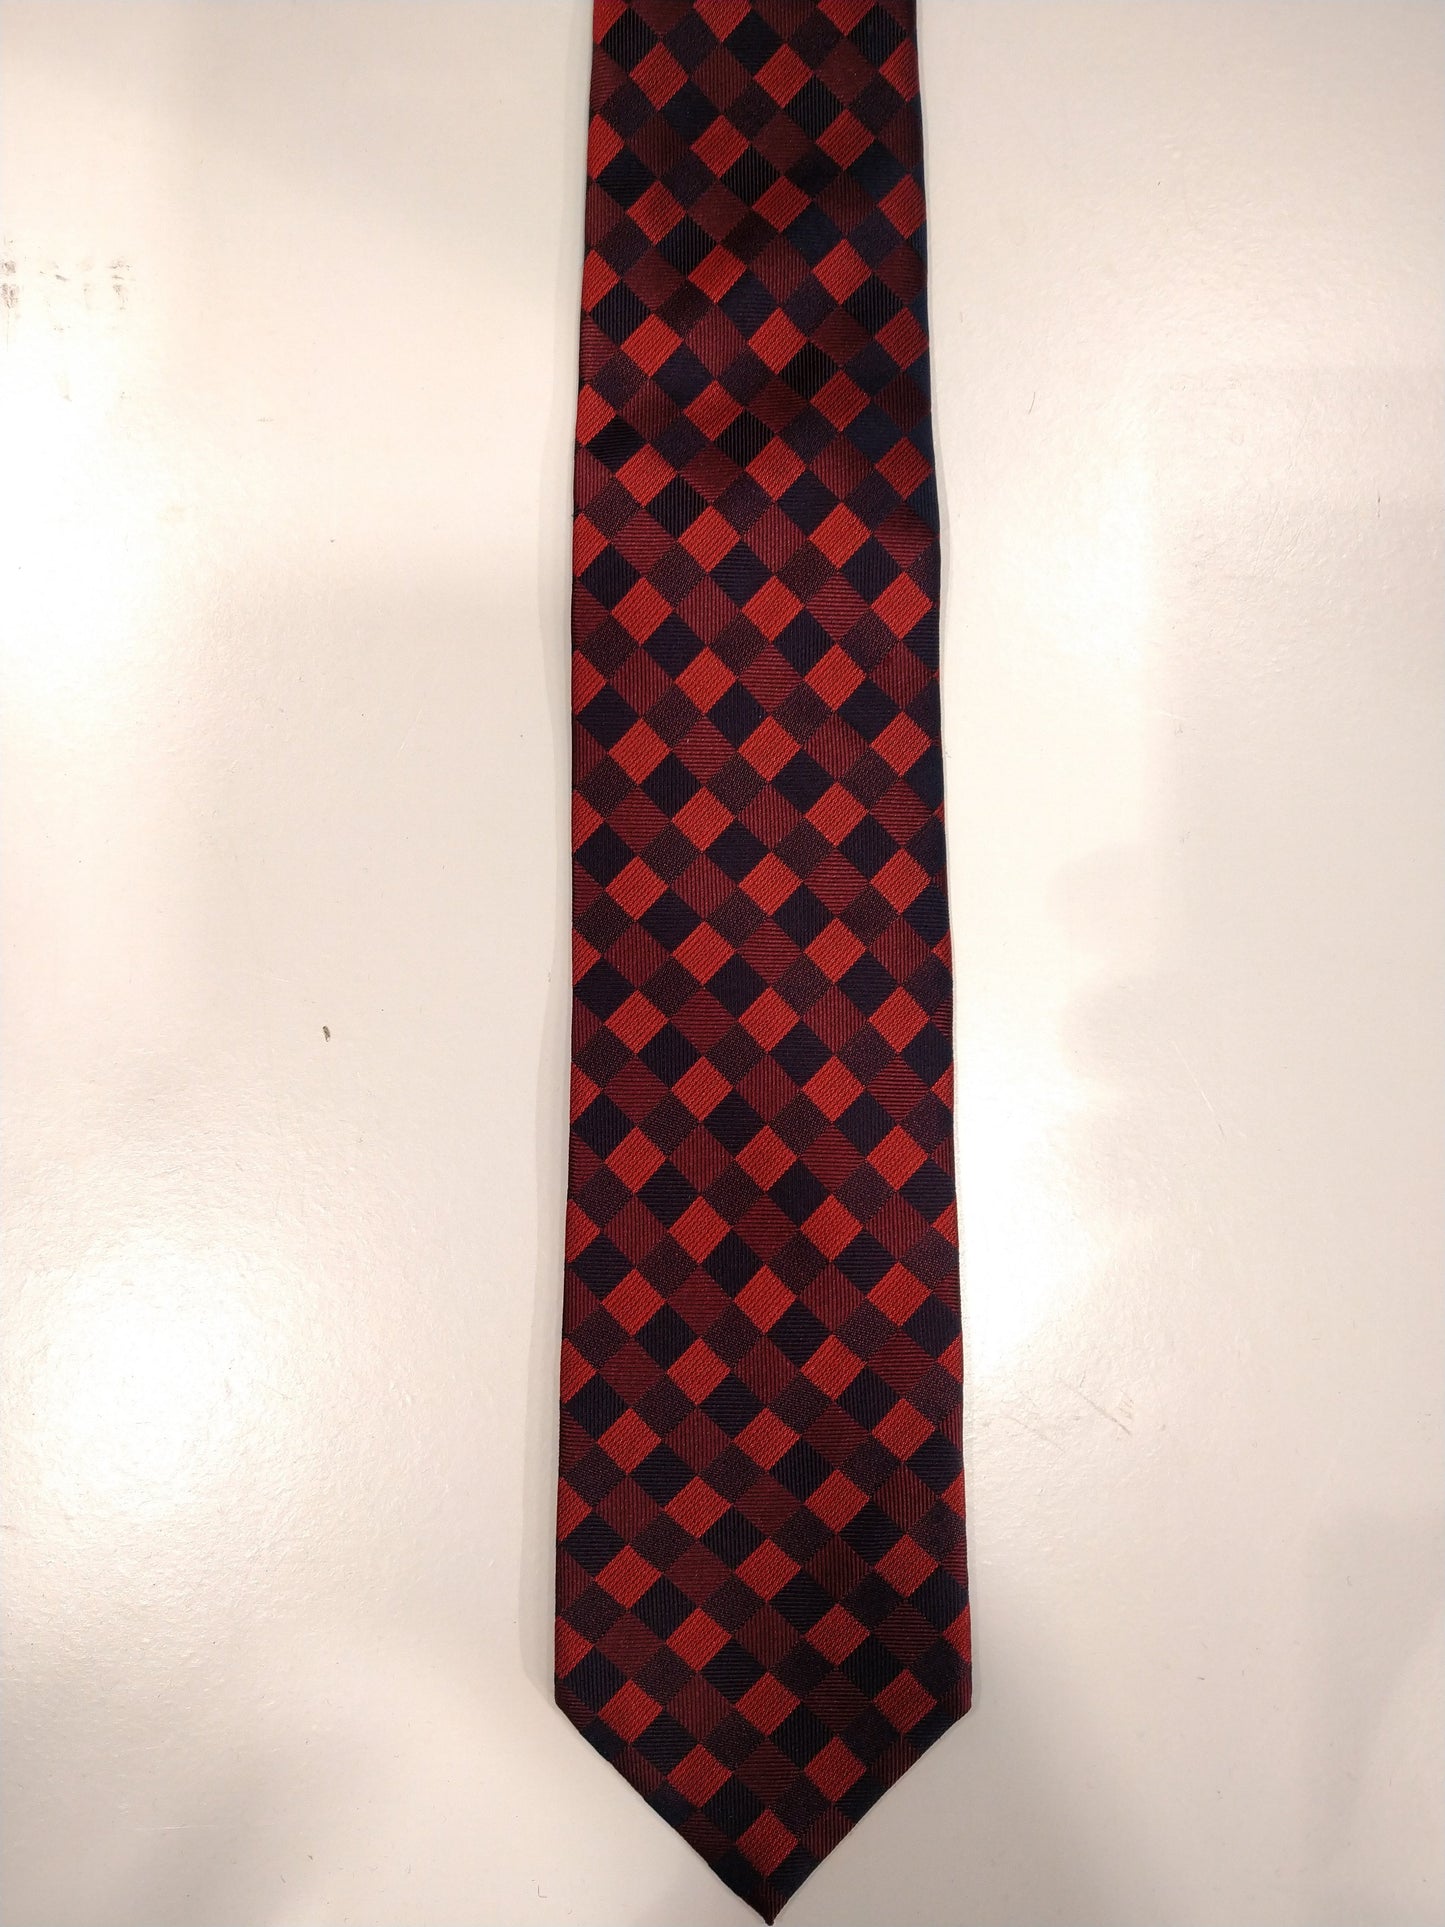 LIV zijde stropdas. Rood zwart geblokt motief.